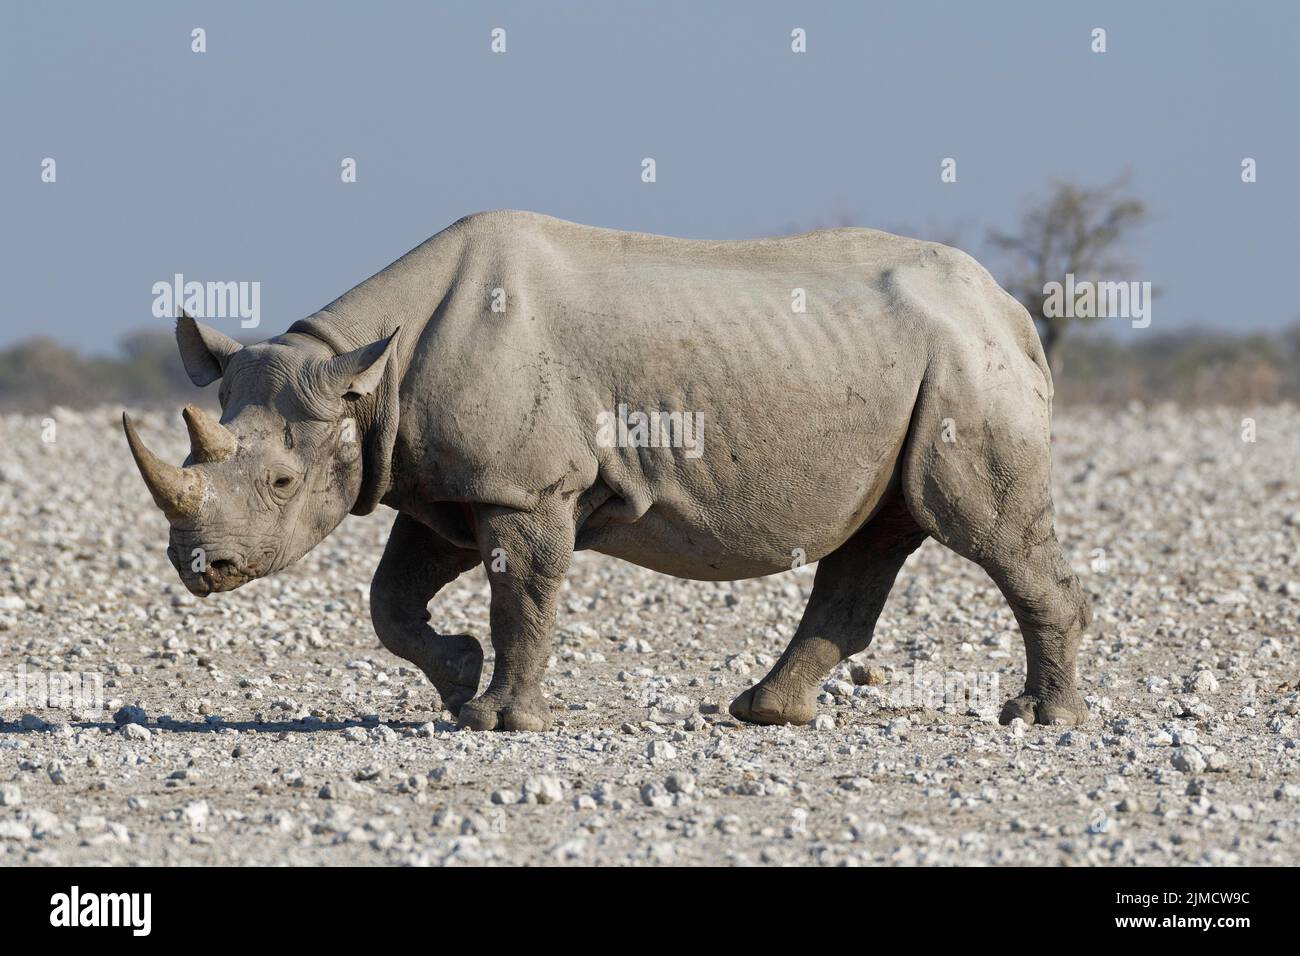 Black rhinoceros (Diceros bicornis), adult walking on arid ground, Etosha National Park, Namibia, Africa Stock Photo